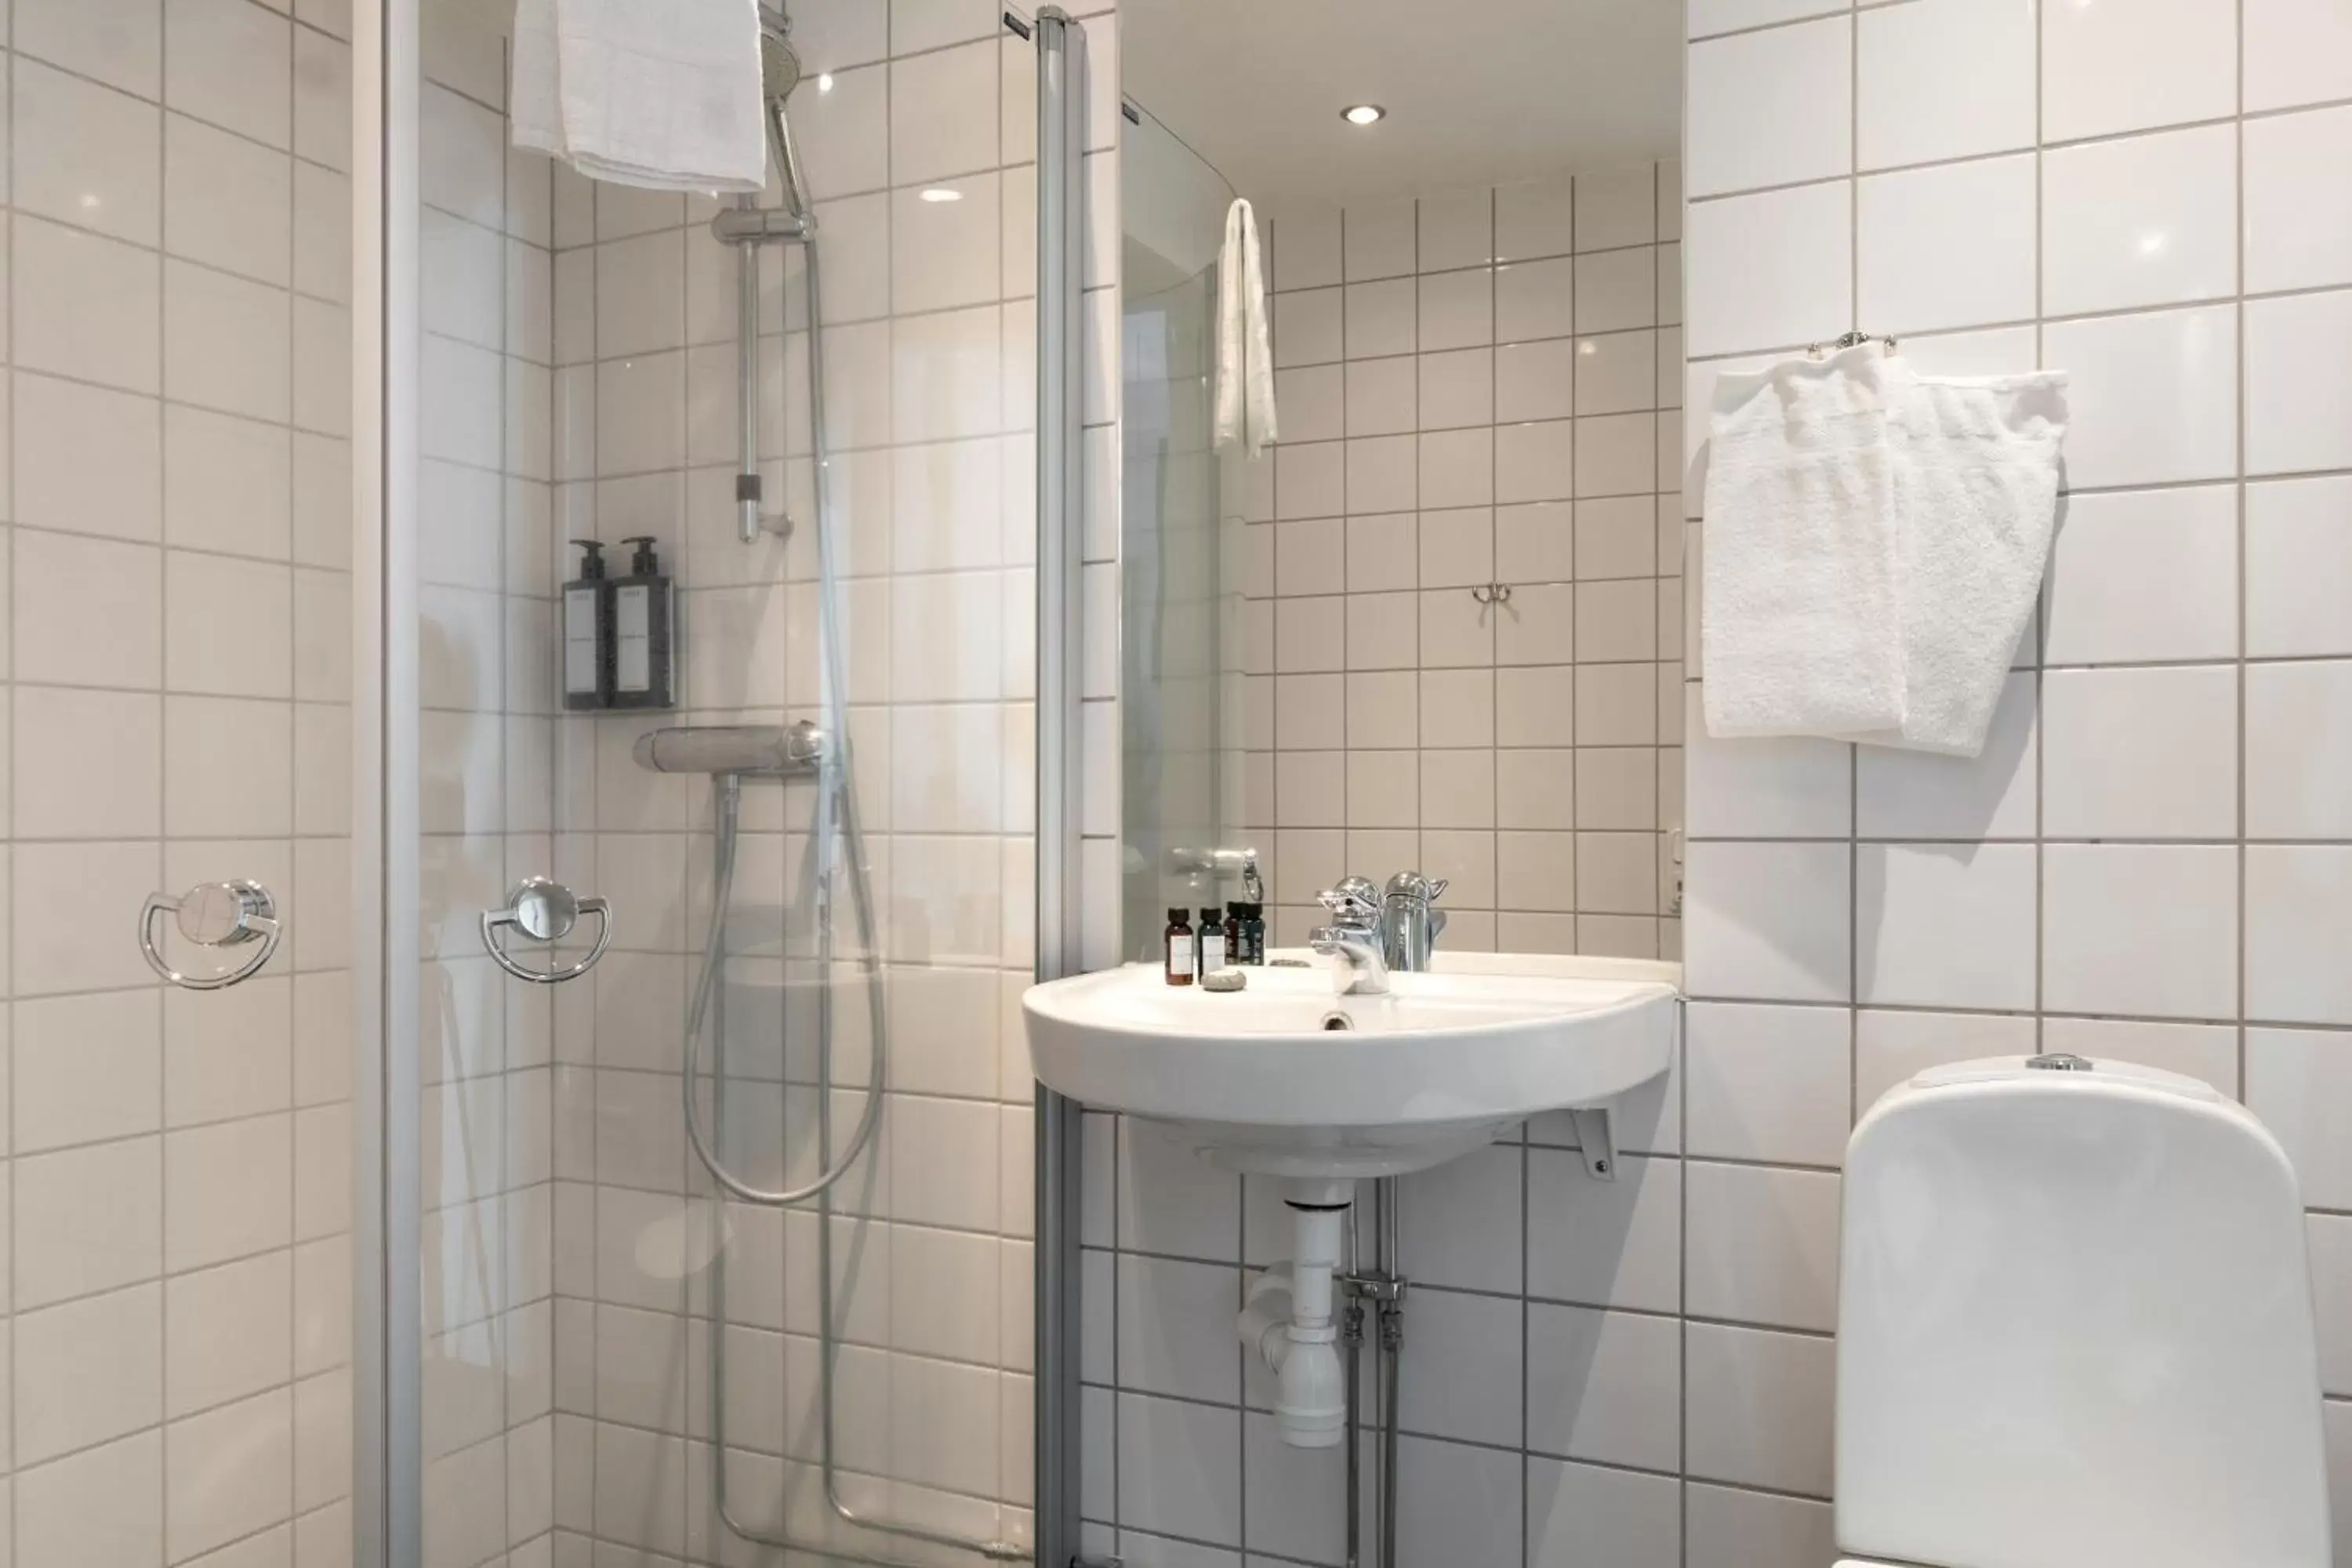 Photo of the whole room, Bathroom in Elite Stadshotellet Växjö